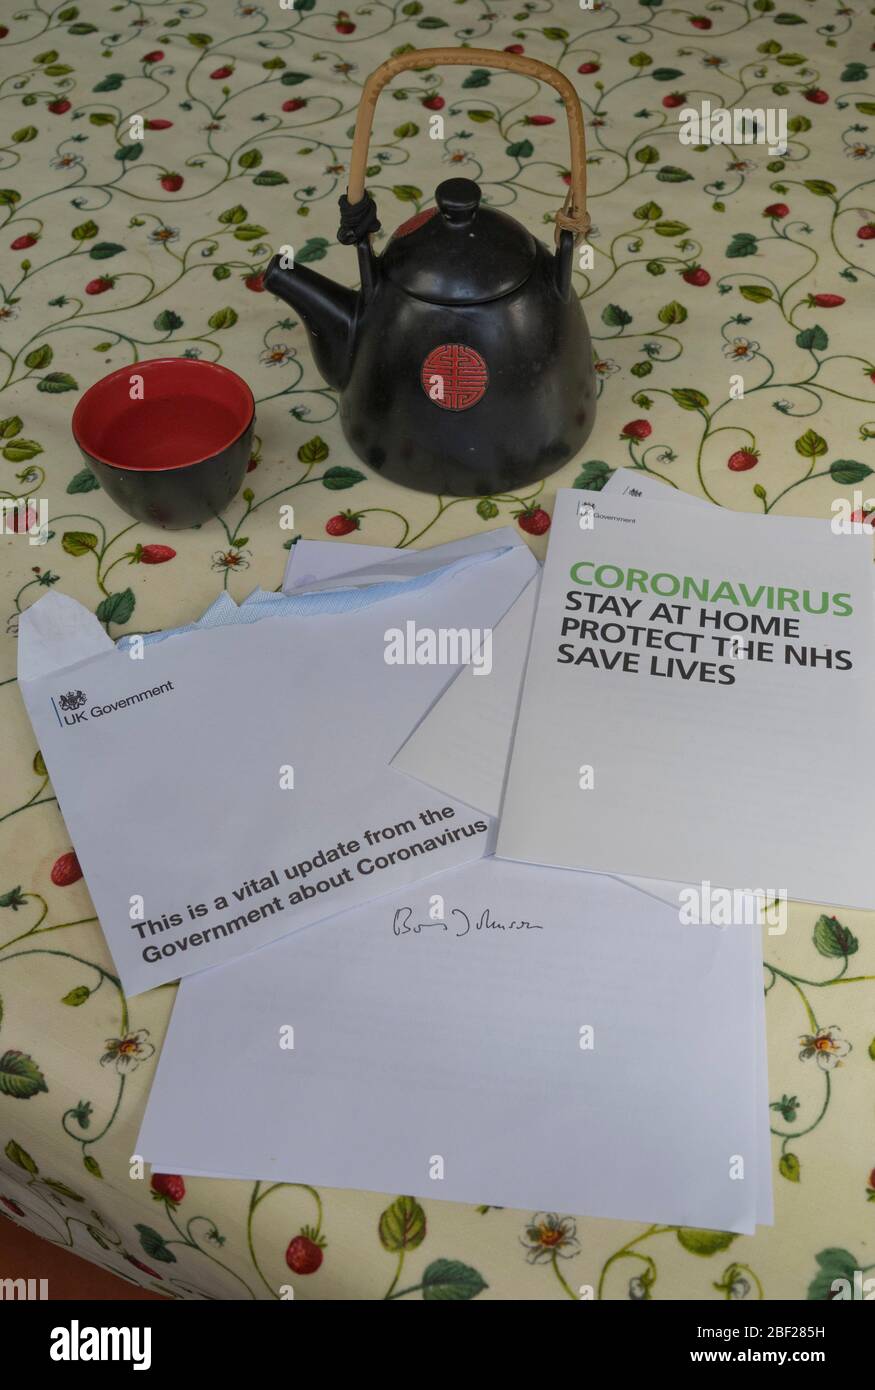 Carta enviada por el primer ministro Boris Johnson a todos los hogares del Reino Unido con advertencia sobre Covid-19,Coronavirus,Londres,Inglaterra,Reino Unido Foto de stock